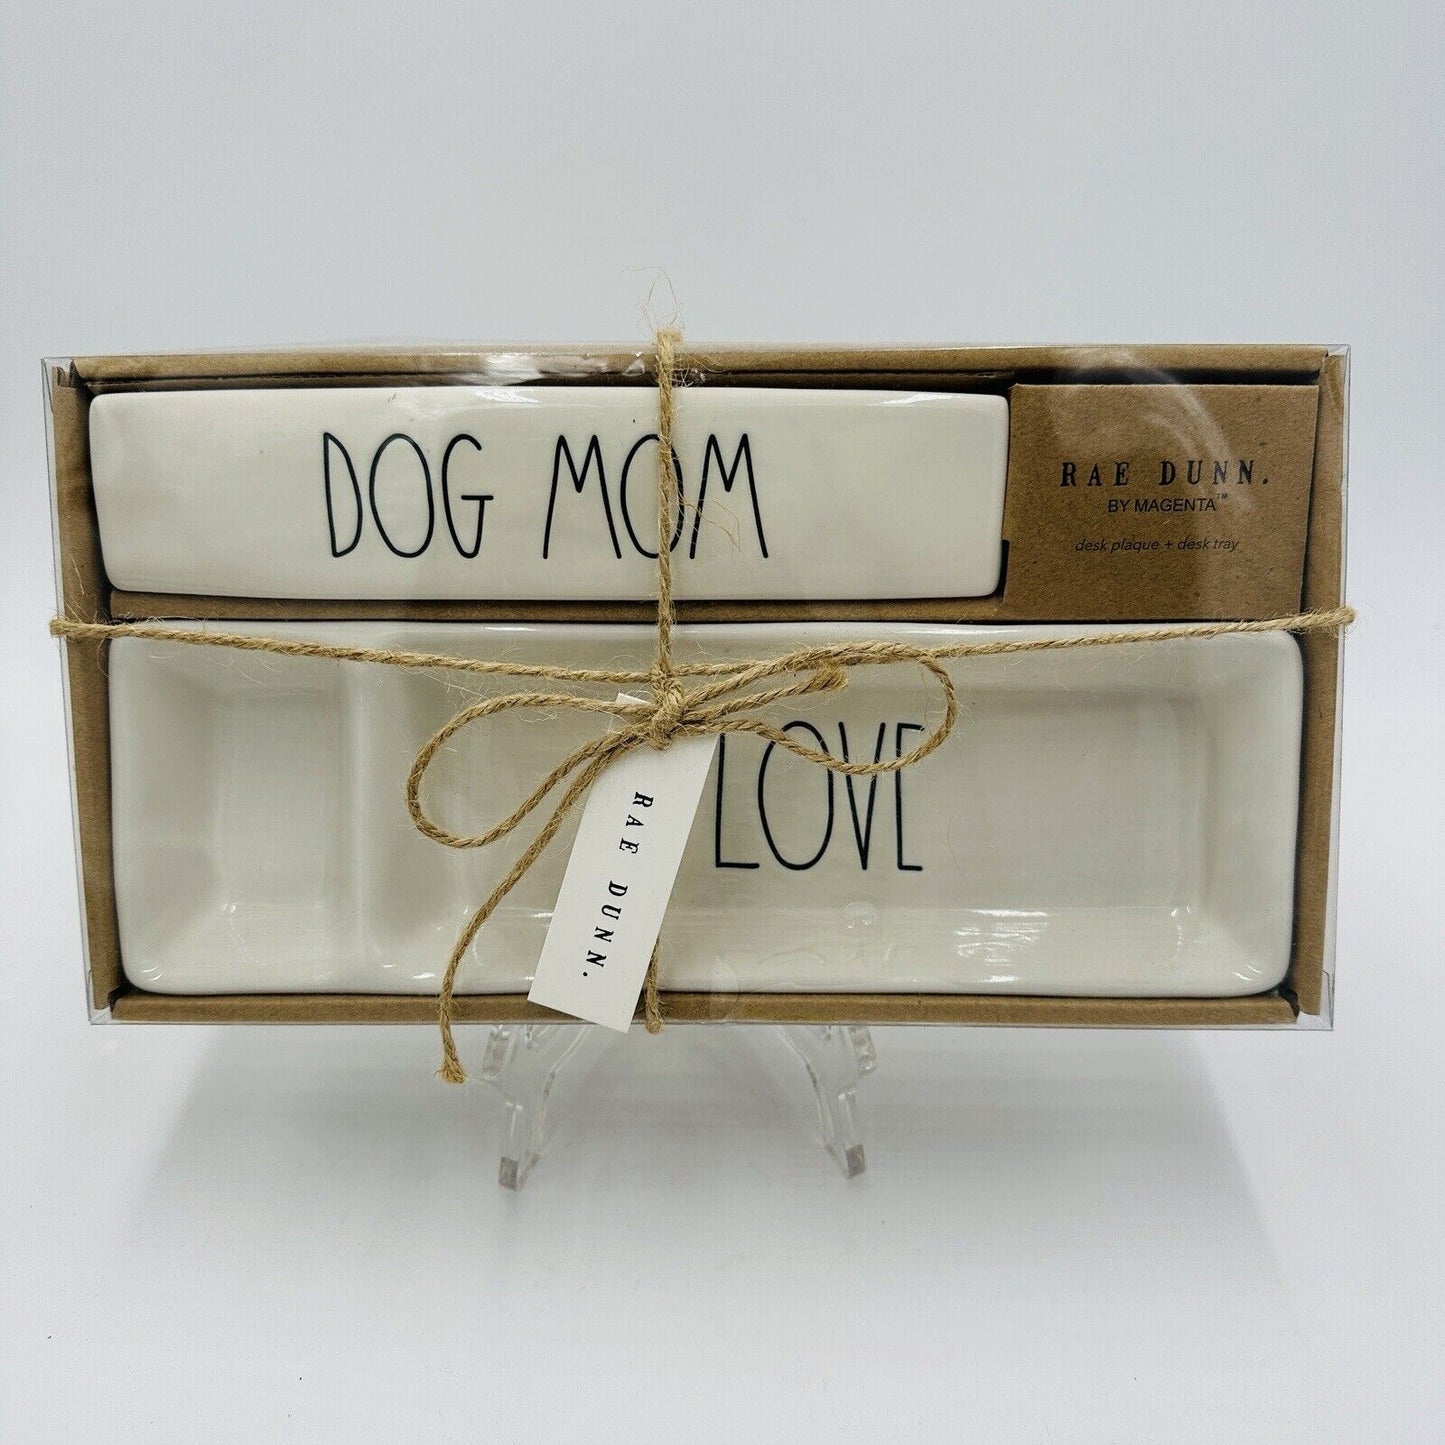 Rae Dunn by Magneta Dog Mom Desk Plaque & Desk Tray Gift Set Brand New